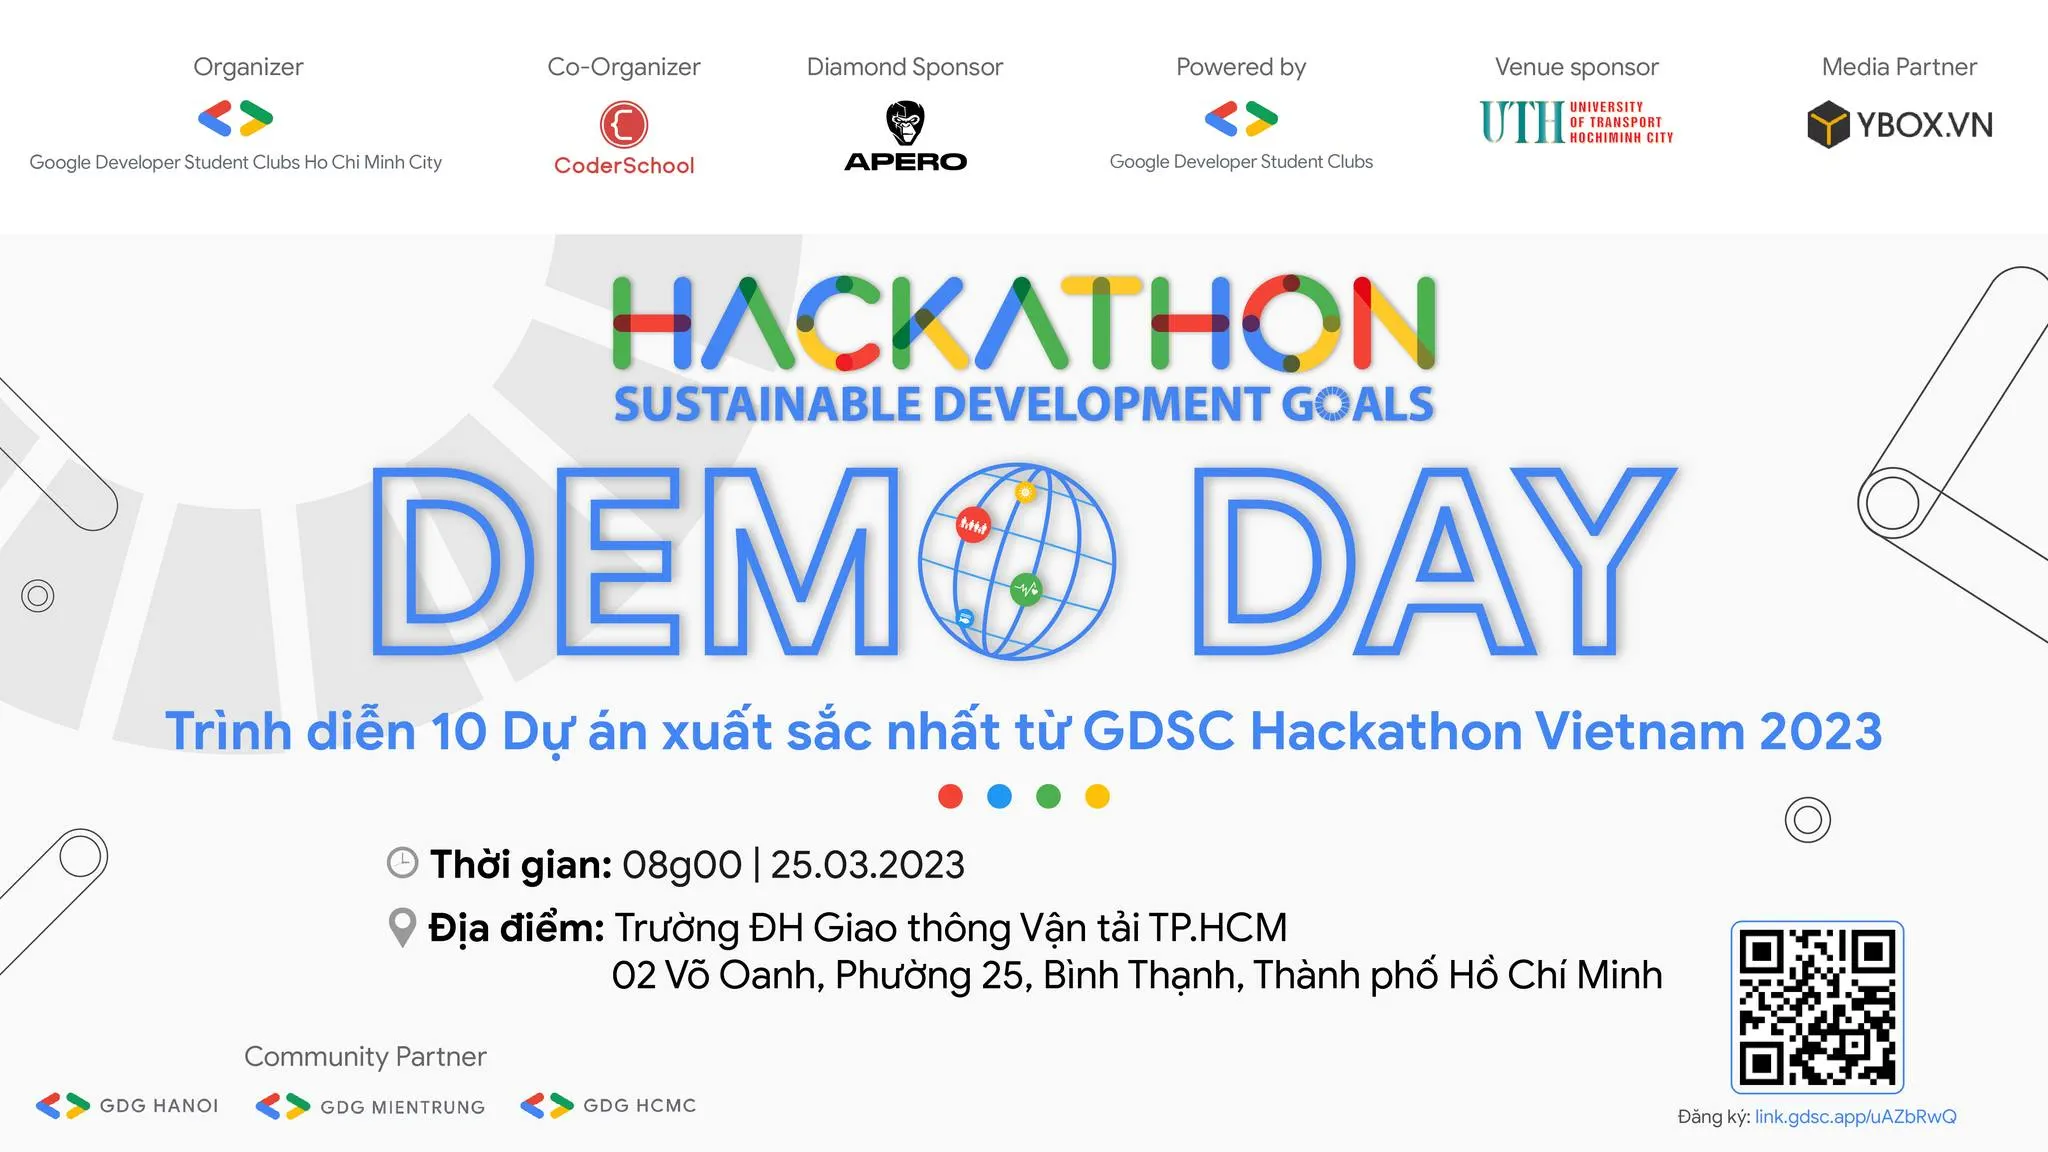 Trình diễn 10 dự án công nghệ xuất sắc nhất tại Demoday – Chung kết GDSC Hackathon VietNam 2023